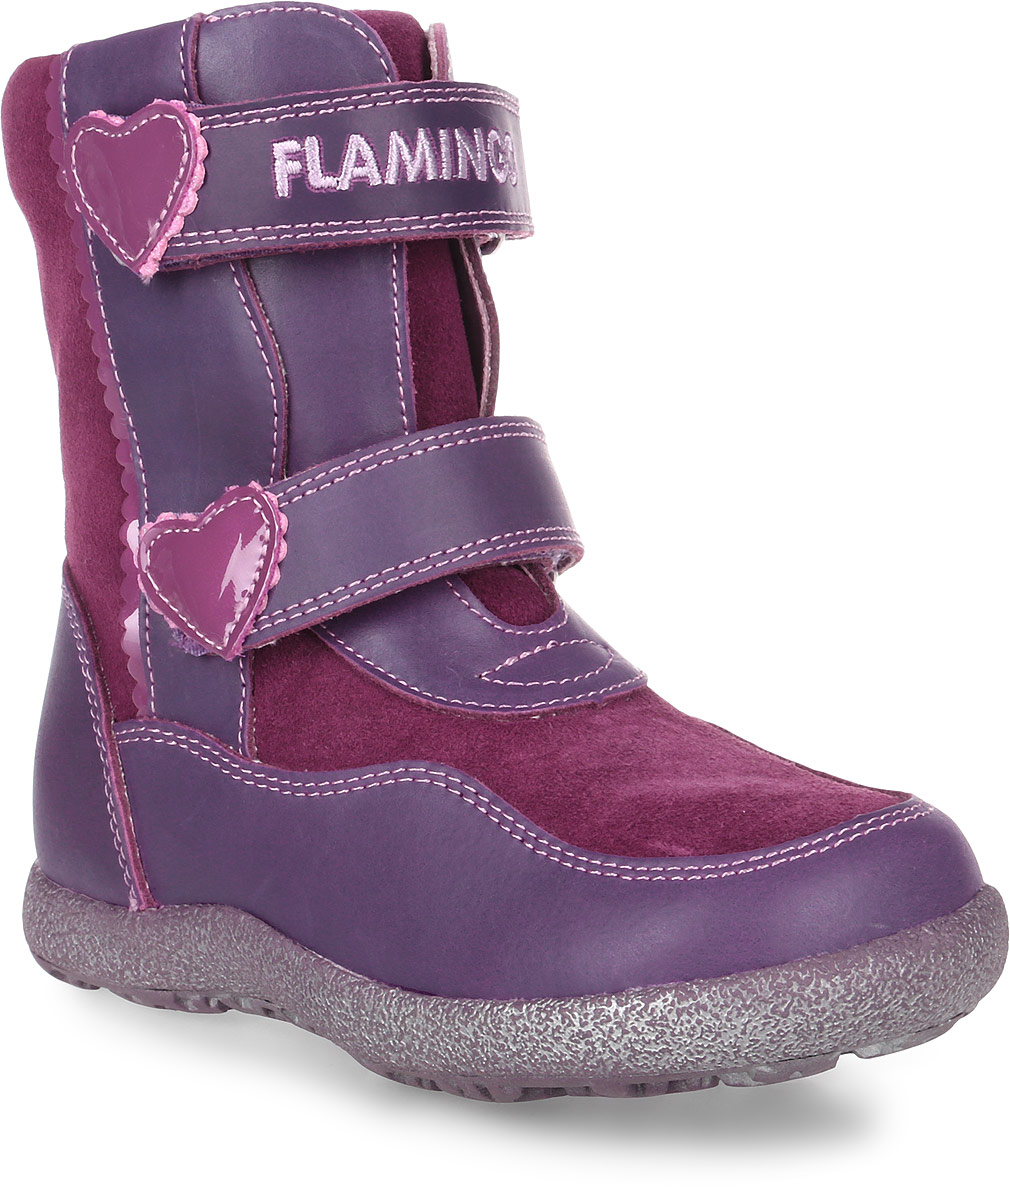 Ботинки для девочки Flamingo, цвет: фиолетовый, бордовый. LC3915. Размер 30